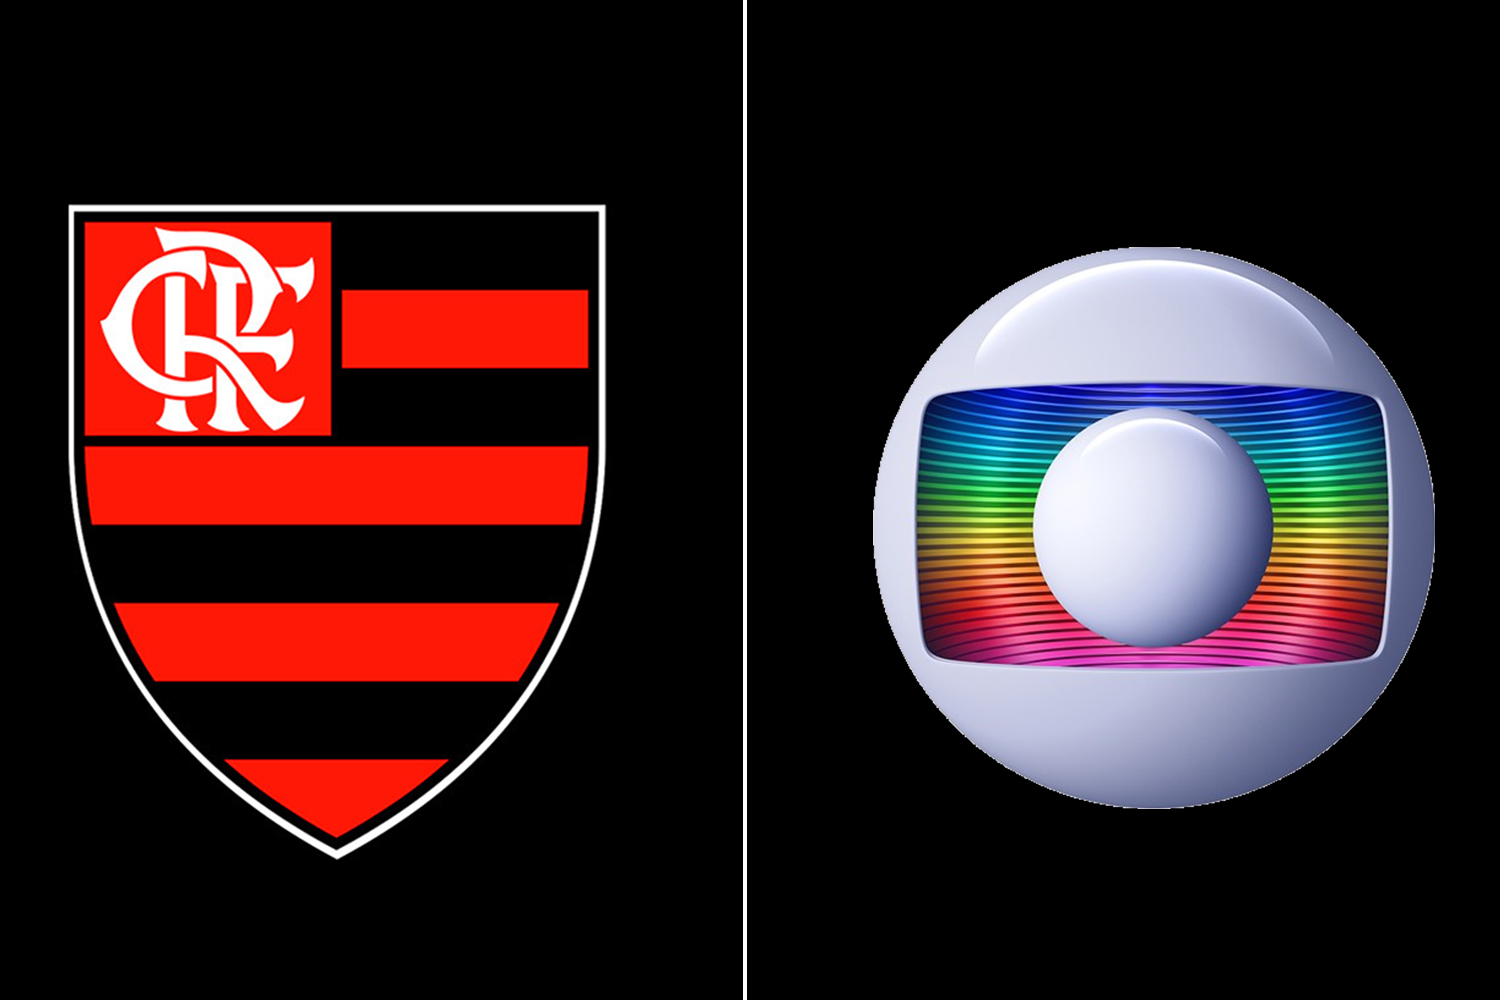 O jogo do Flamengo hoje vai passar na Globo? Como assistir ao vivo